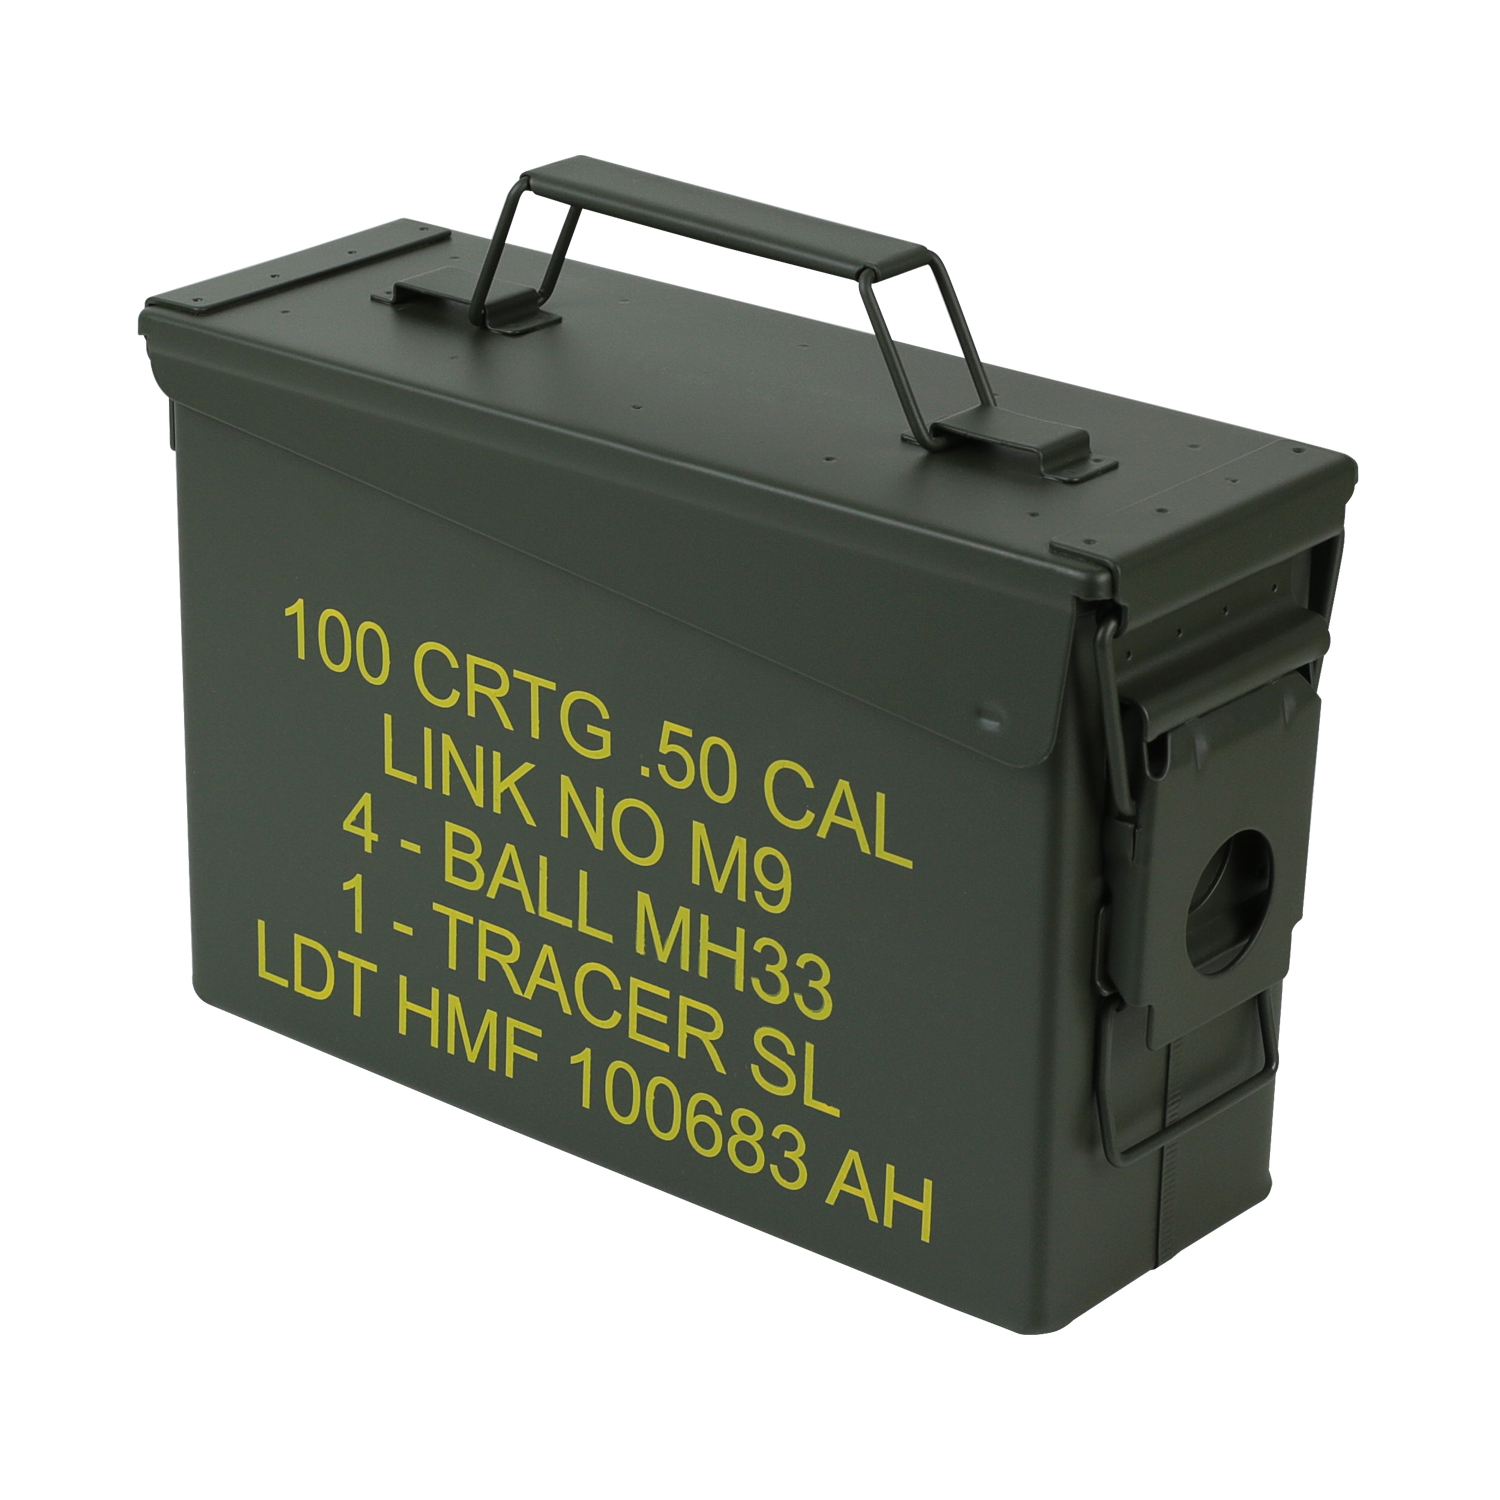 US Ammo Box als Munitionskoffer aus Metall von HMF mit den Maßen 27.5 x 17.5 x 9.5 cm in grün